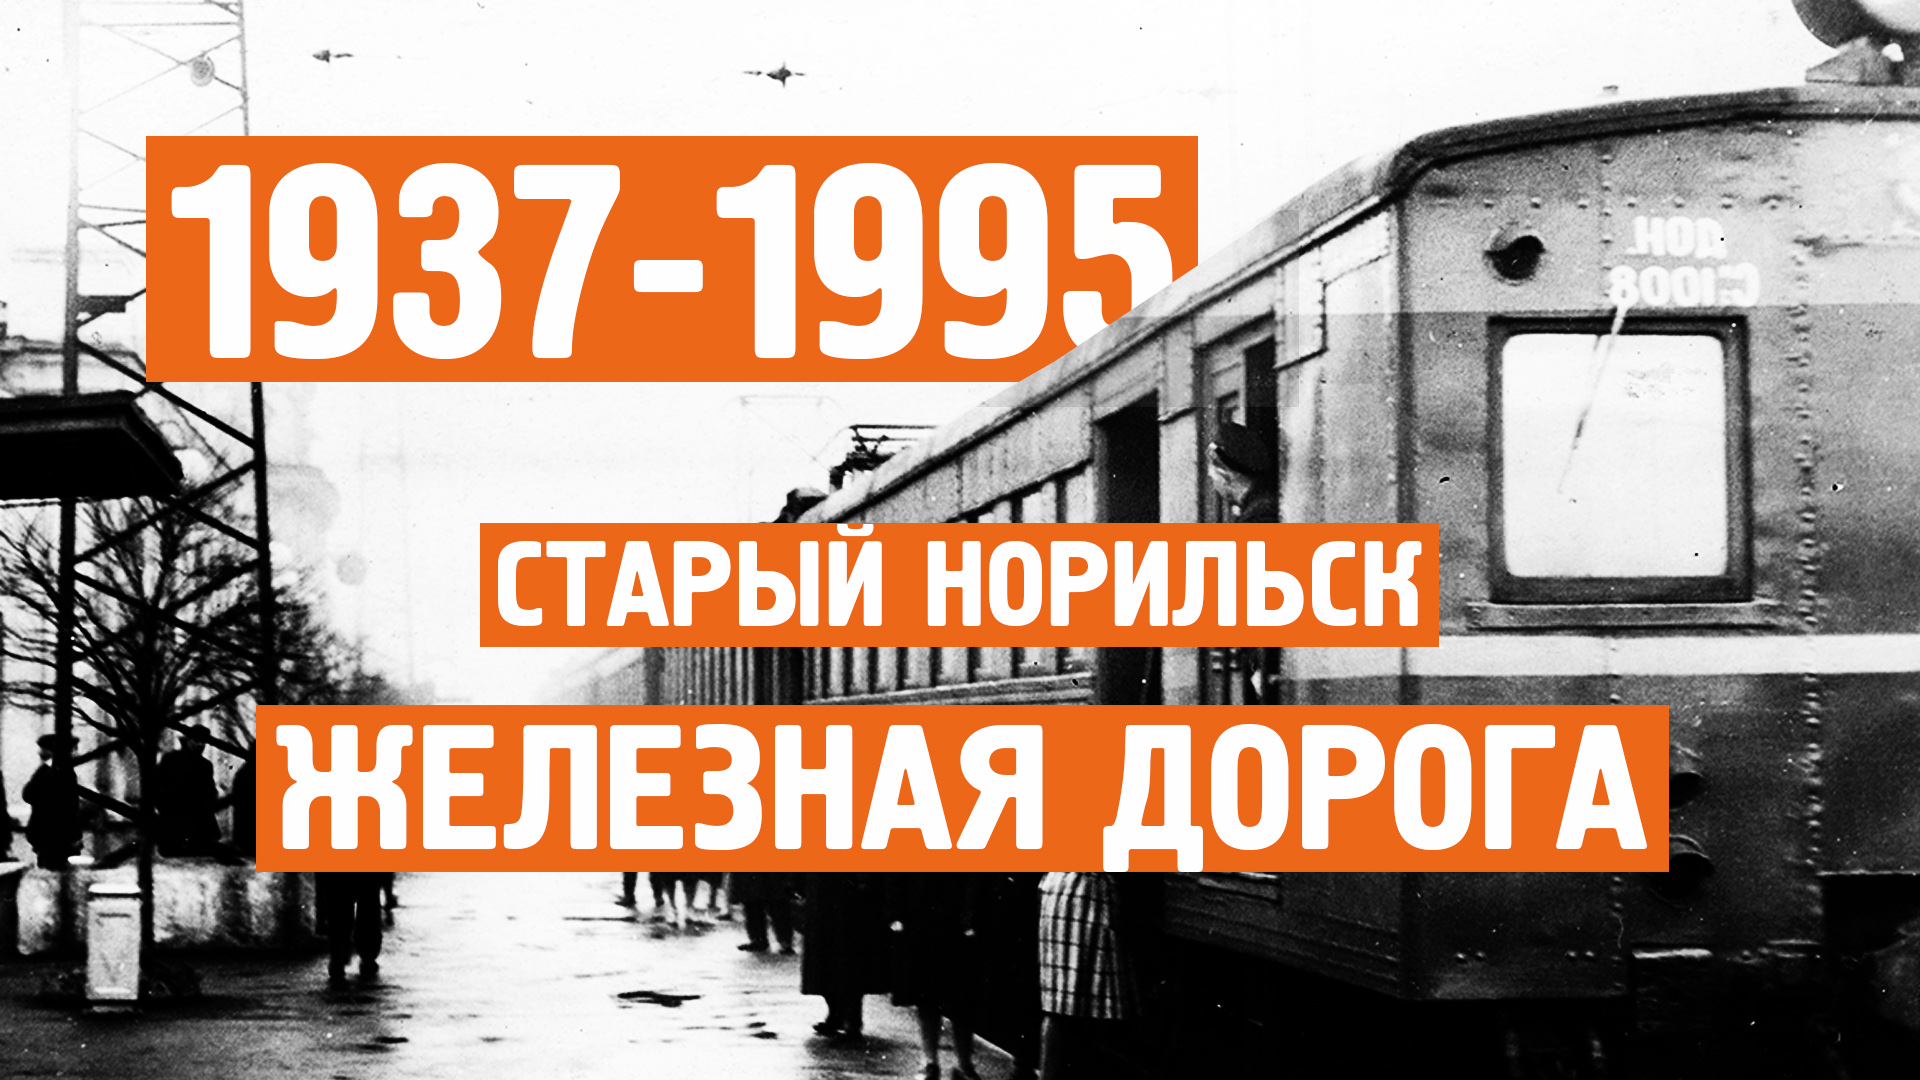 Старый Норильск / Хроника / 1937 - 1995г / Норильск блог